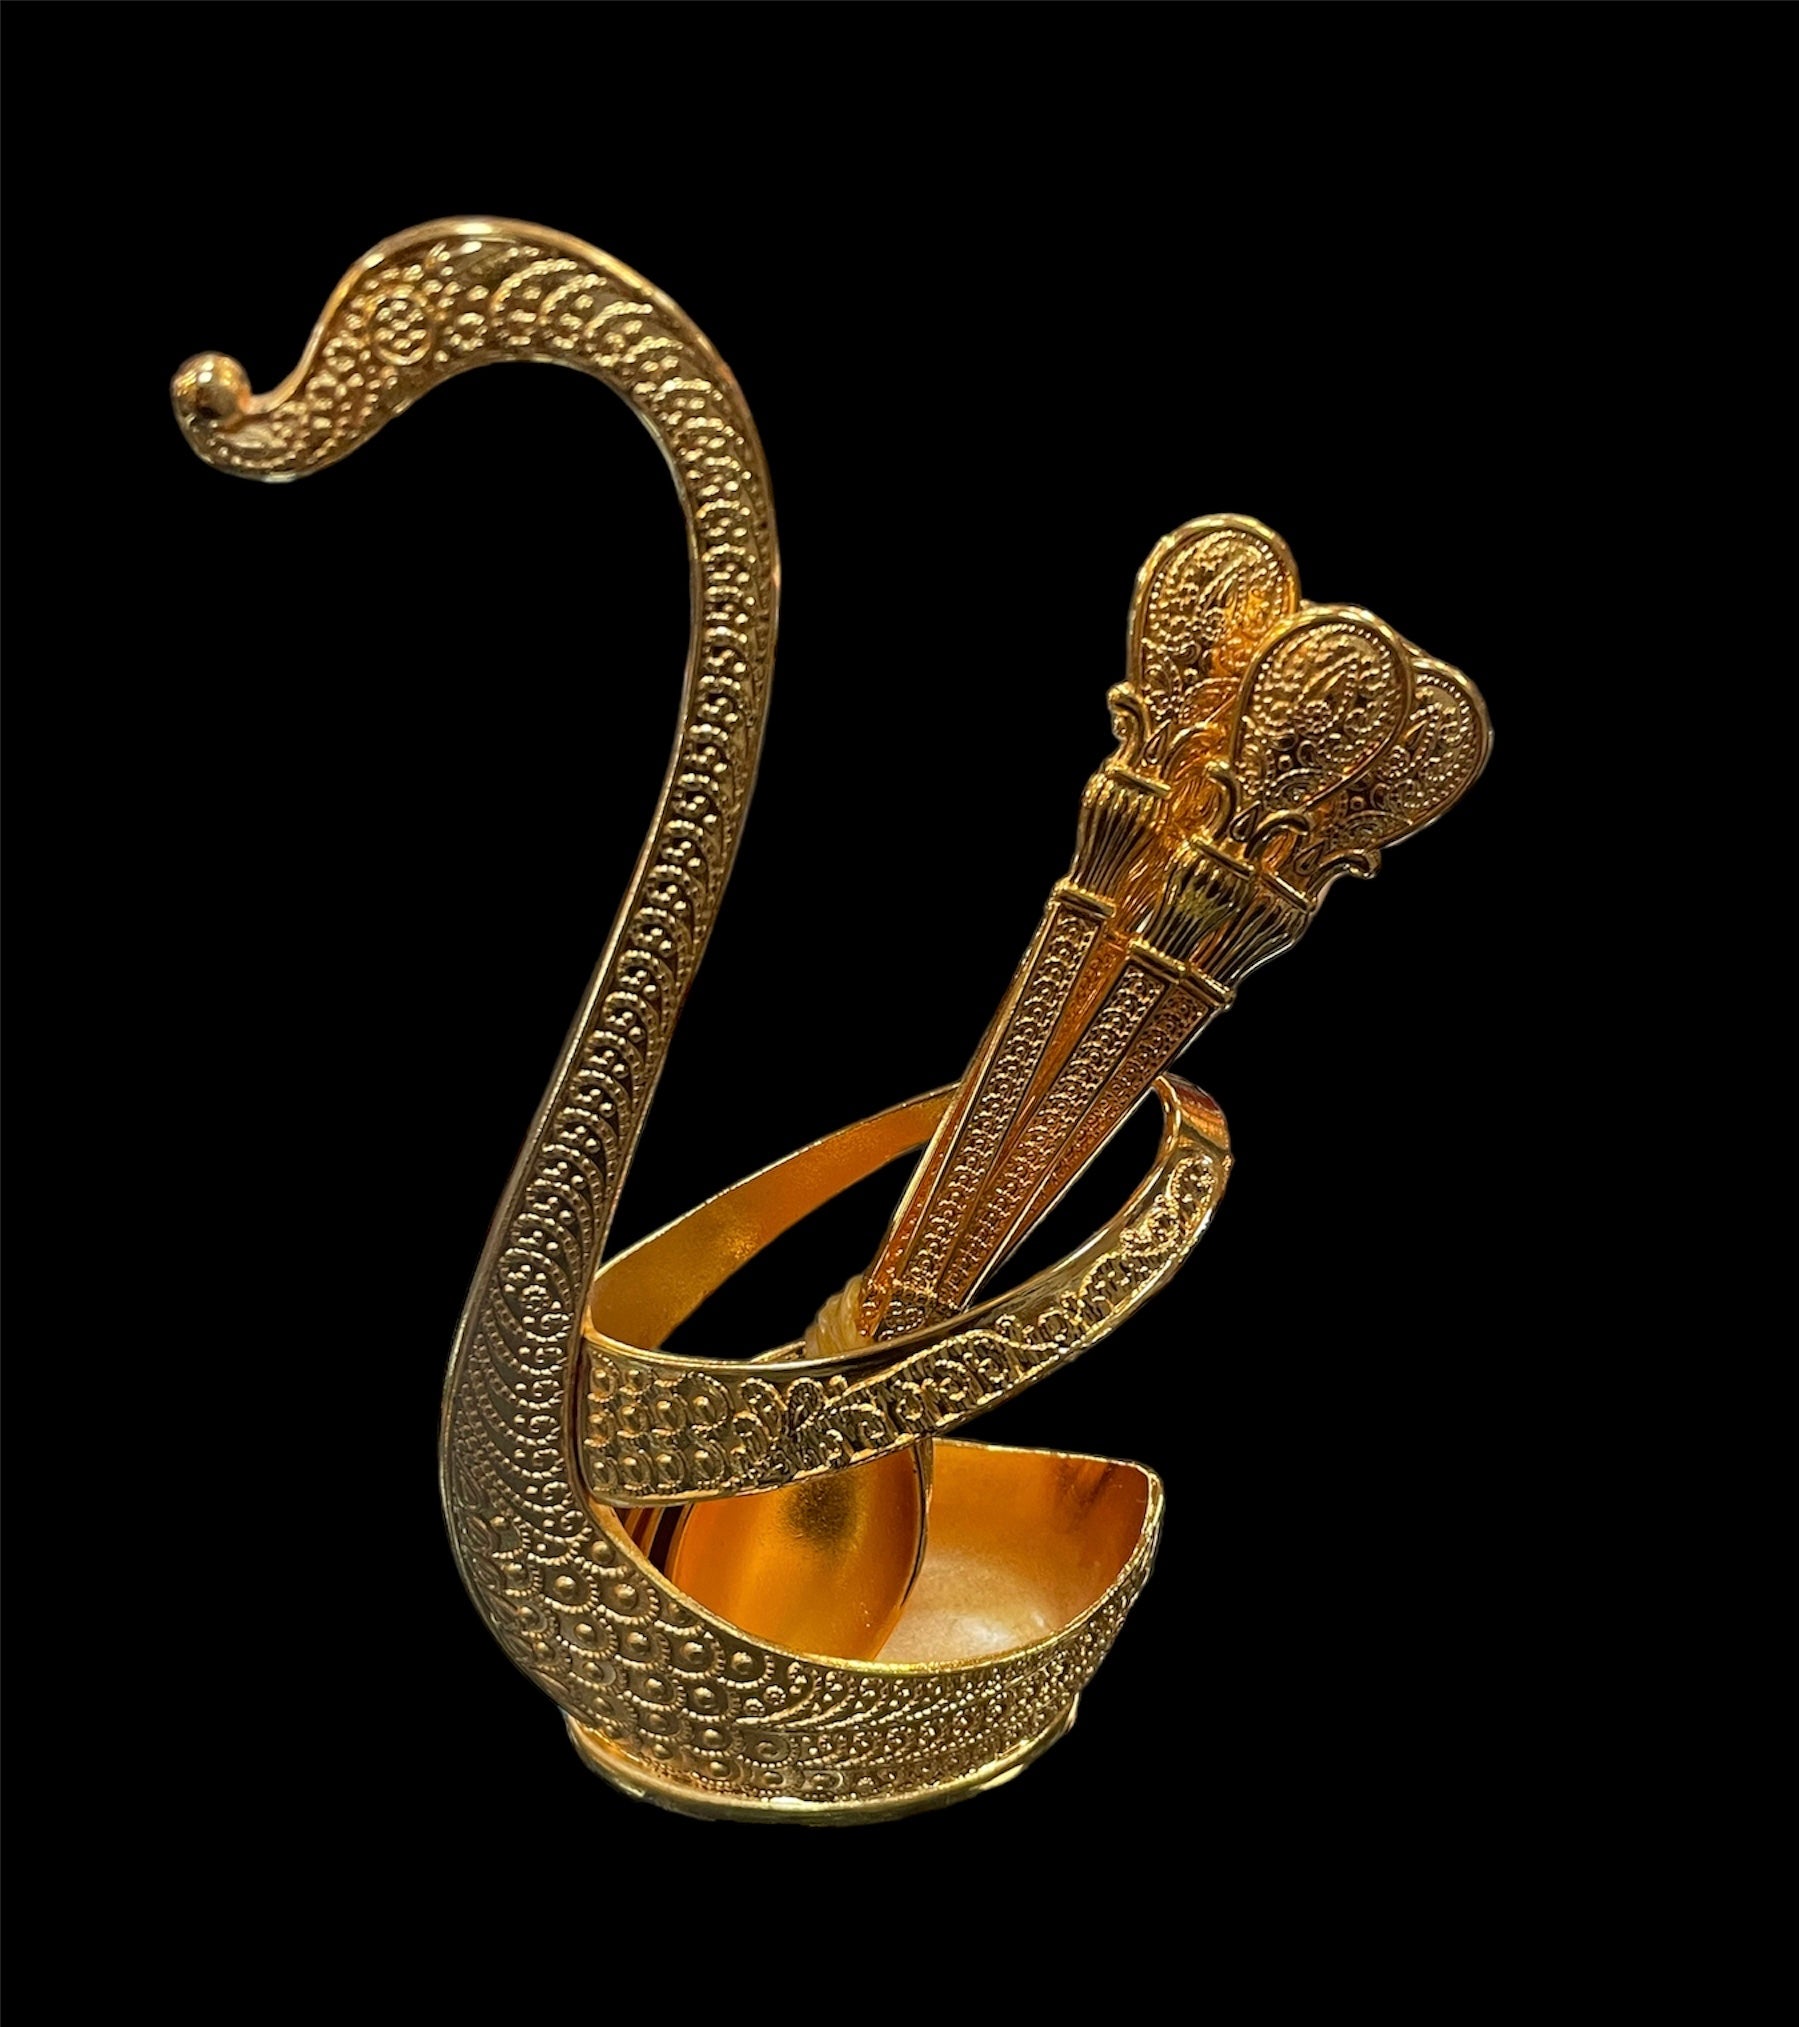 Swan teaspoon holder (includes teaspoons)